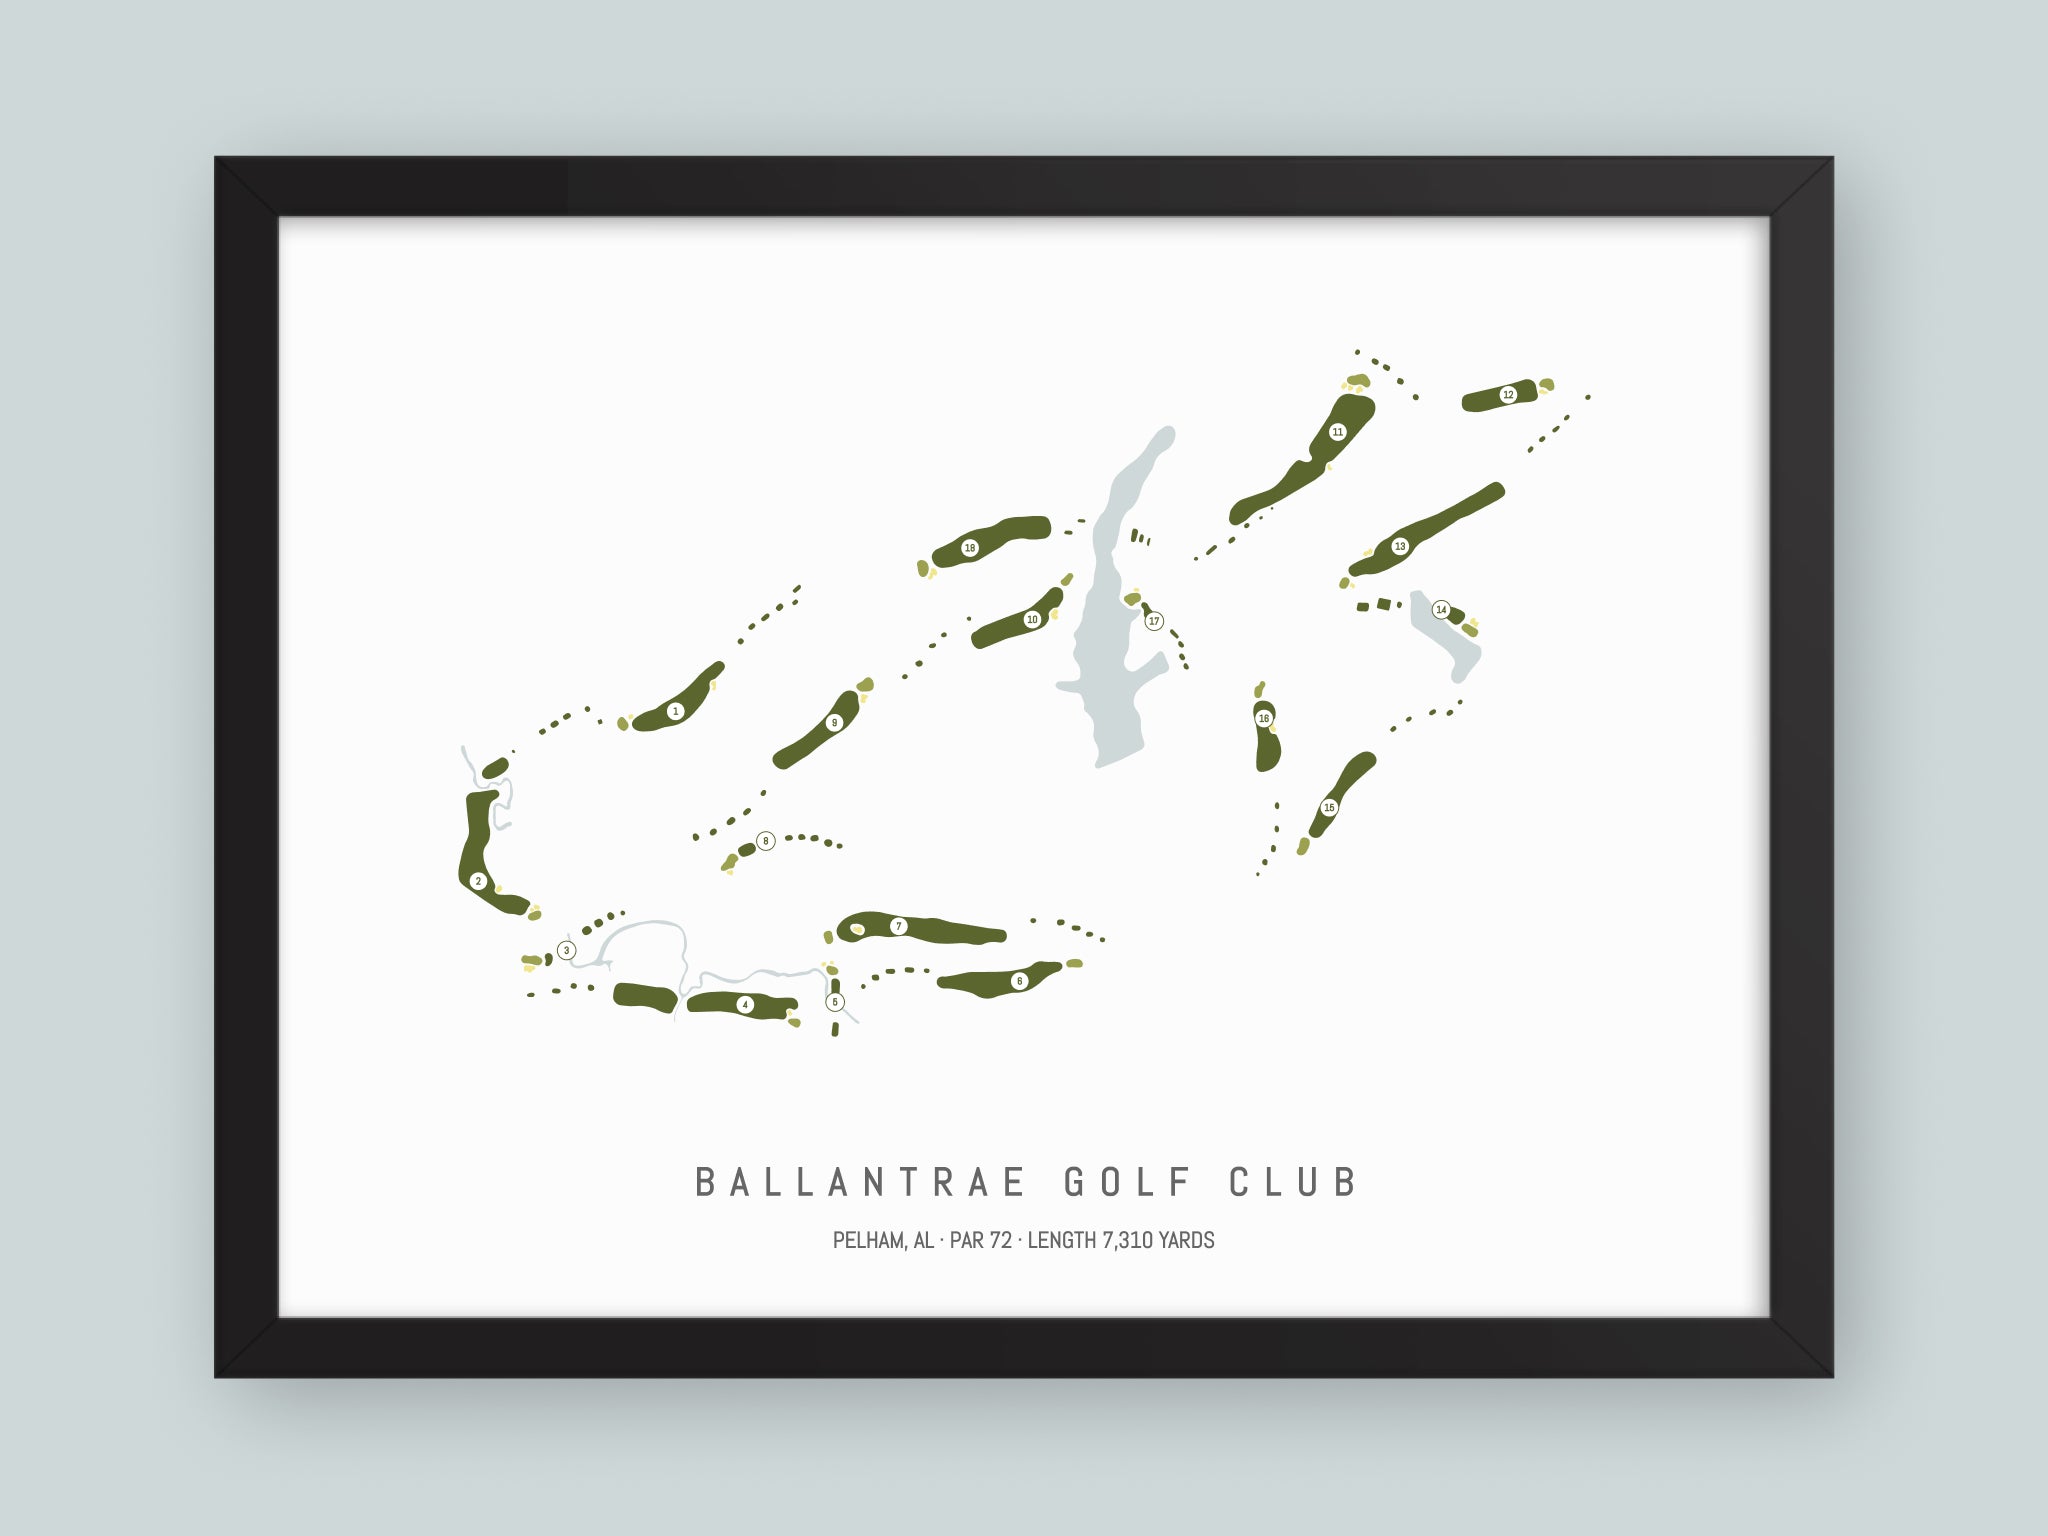 Ballantrae-Golf-Club-AL--Black-Frame-24x18-With-Hole-Numbers